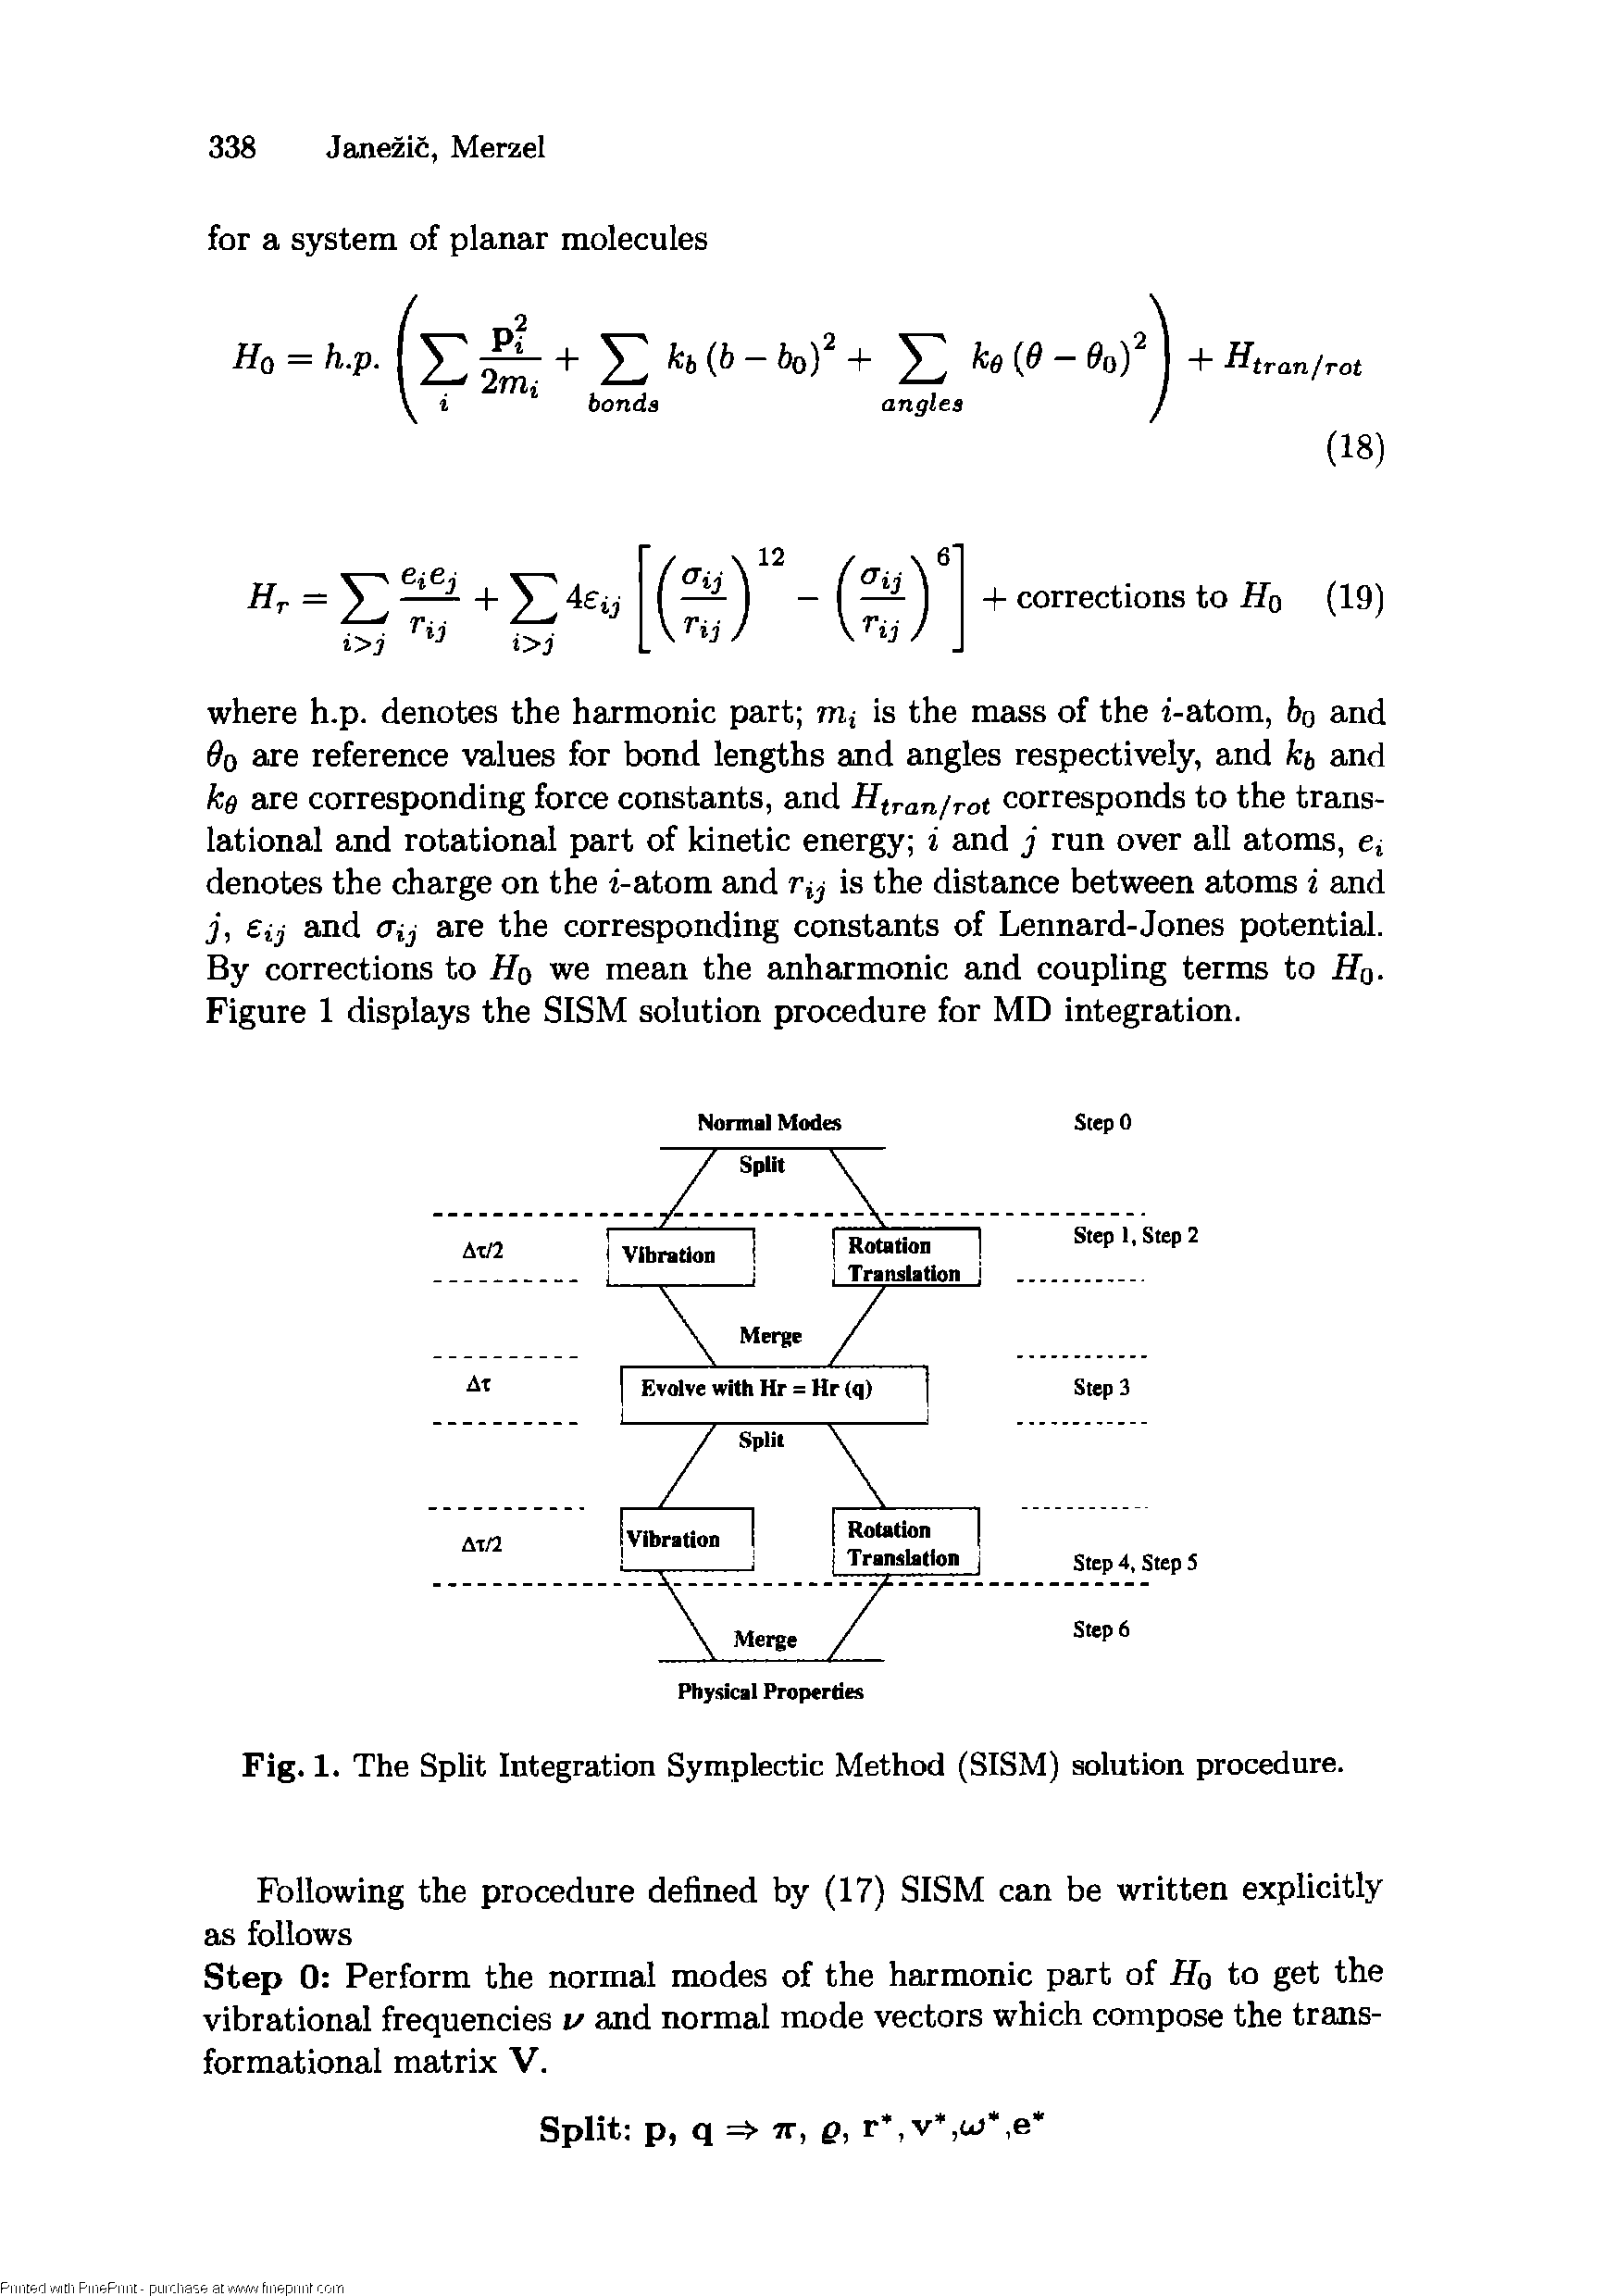 Fig. 1. The Split Integration Symplectic Method (SISM) solution procedure.